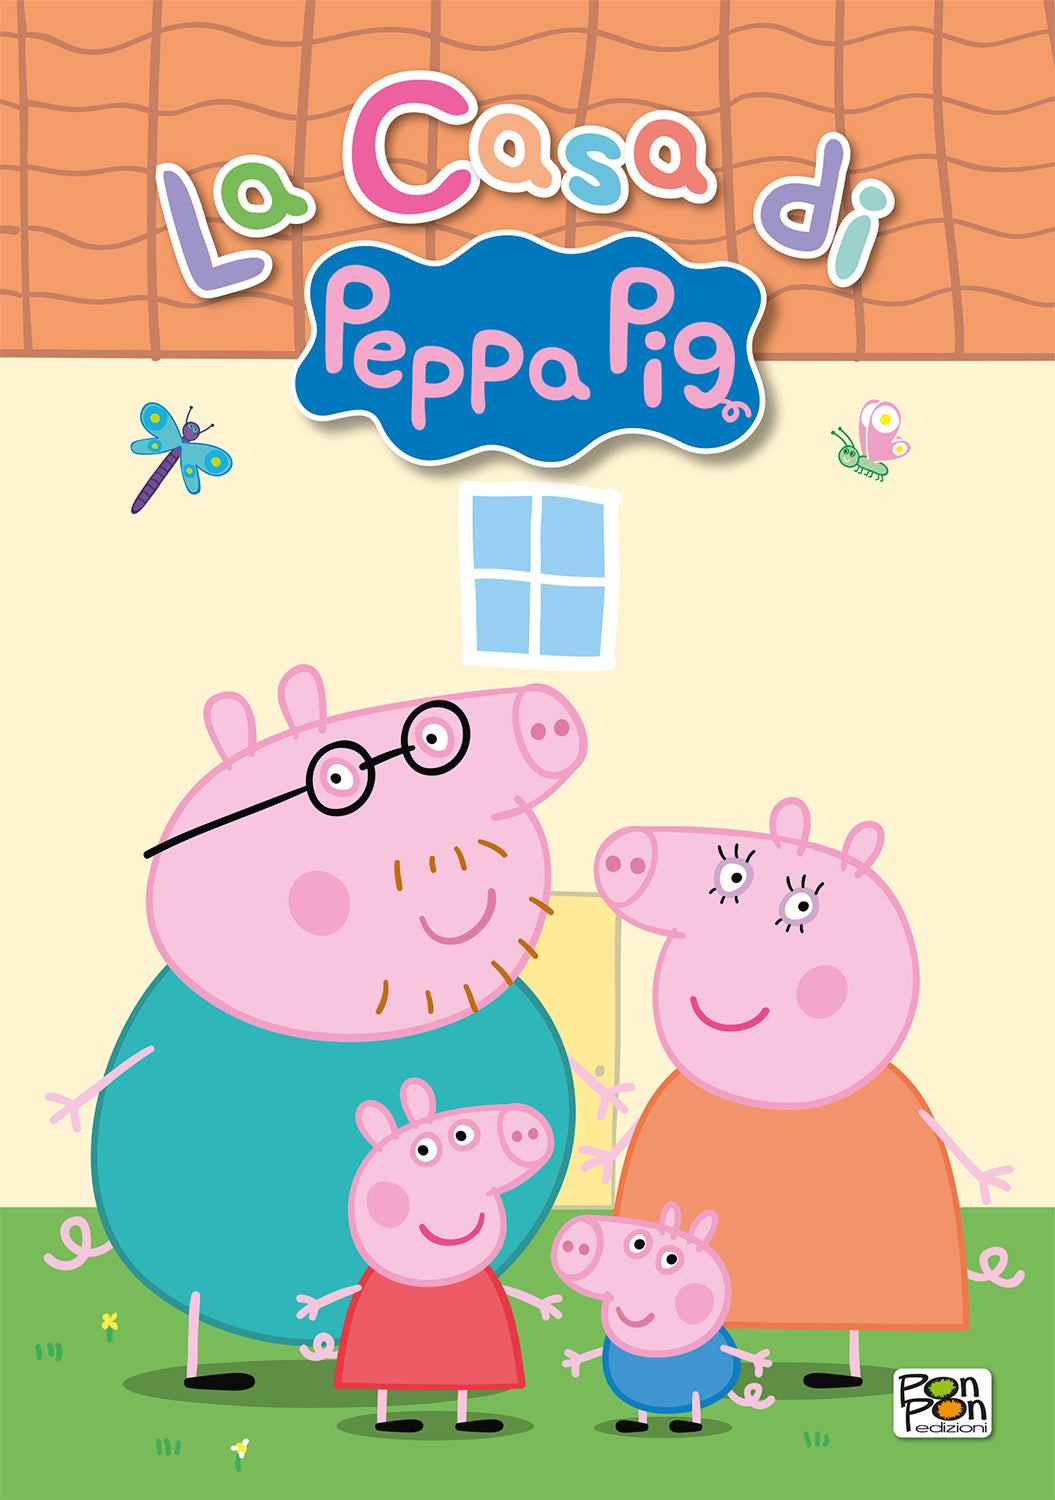 Peppa pig. La casa di Peppa. Puffy sticker